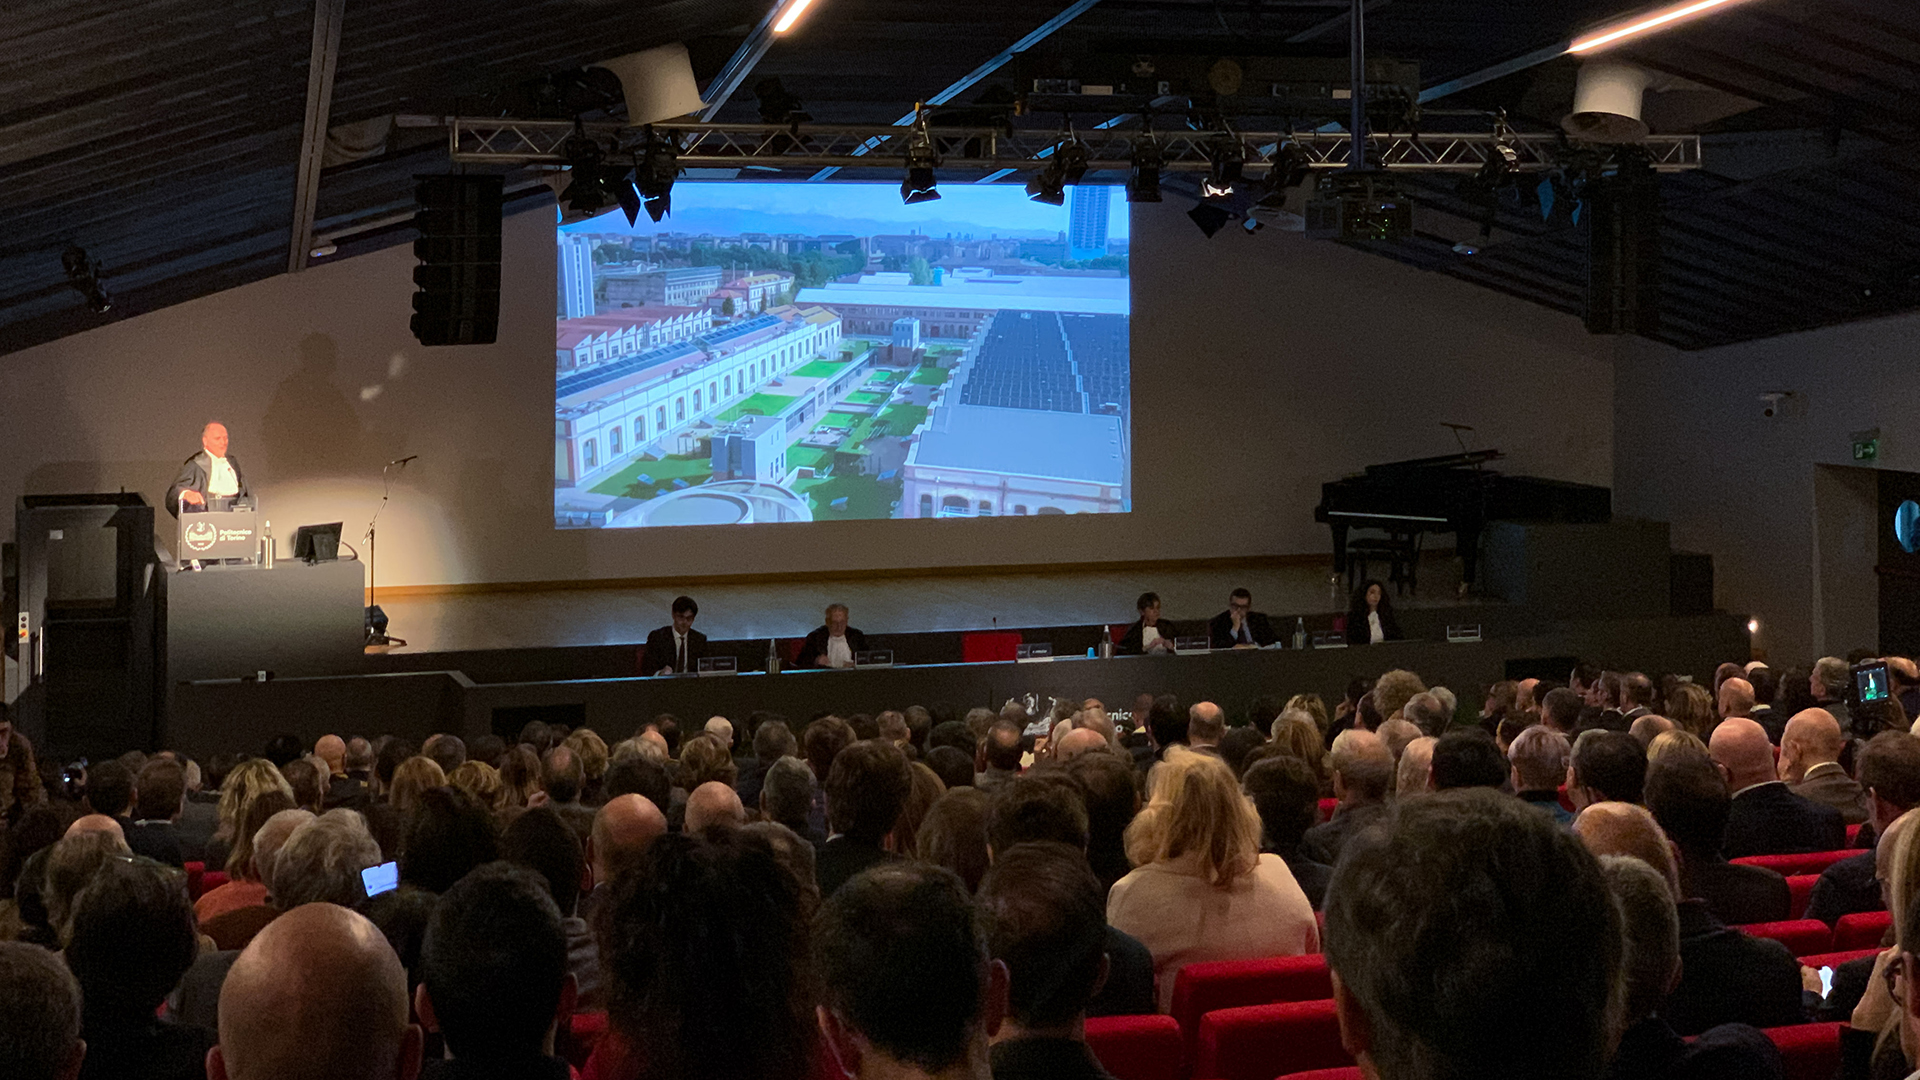 L'aula magna del Politecnico piena di pubblico per l'intervento del Rettore Guido Saracco